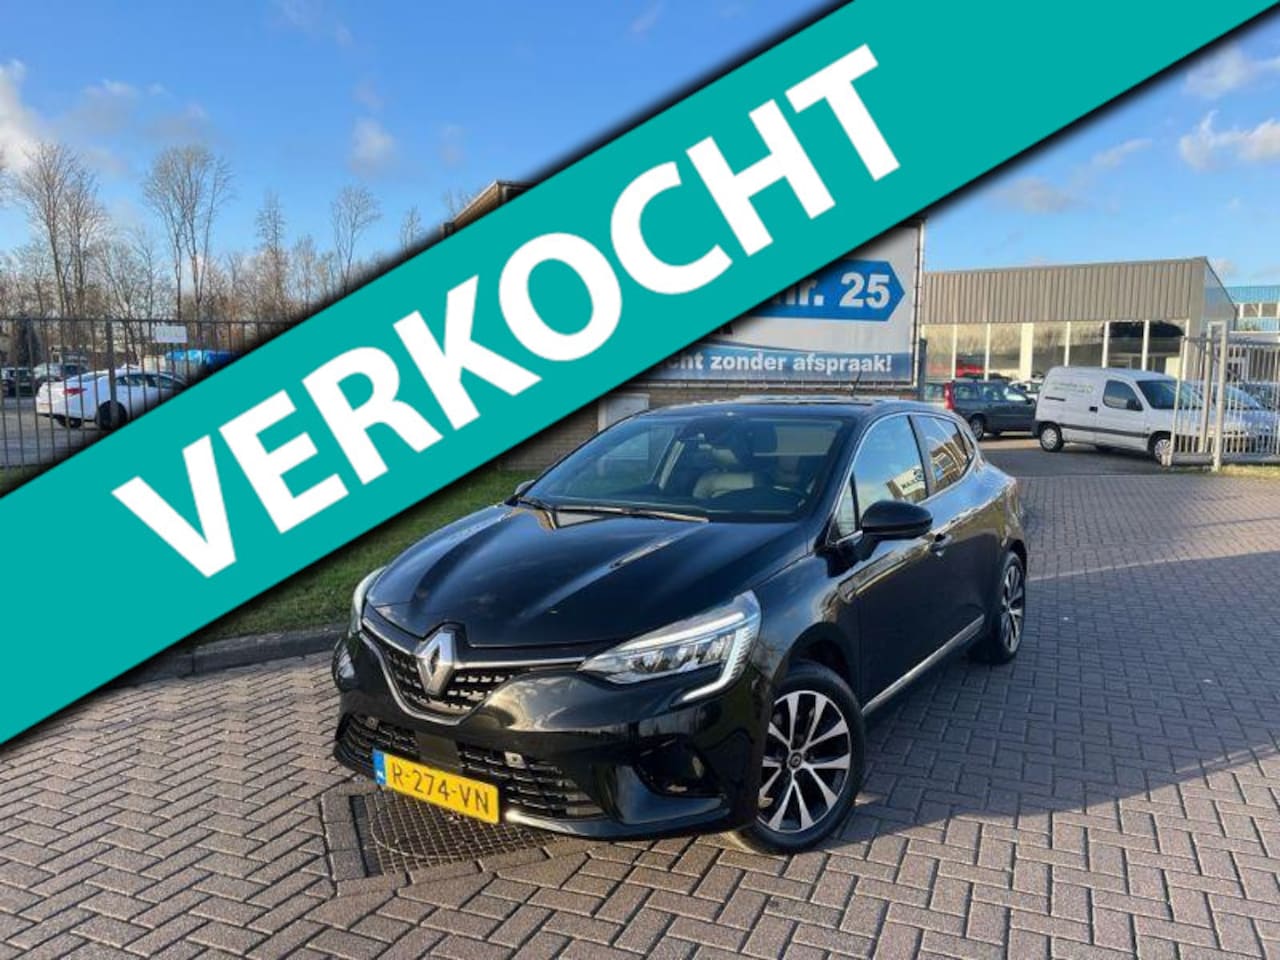 Geniet Il Niet modieus Renault Clio 1.0 TCe Intens Aut interieurverlichting 2020 Benzine -  Occasion te koop op AutoWereld.nl